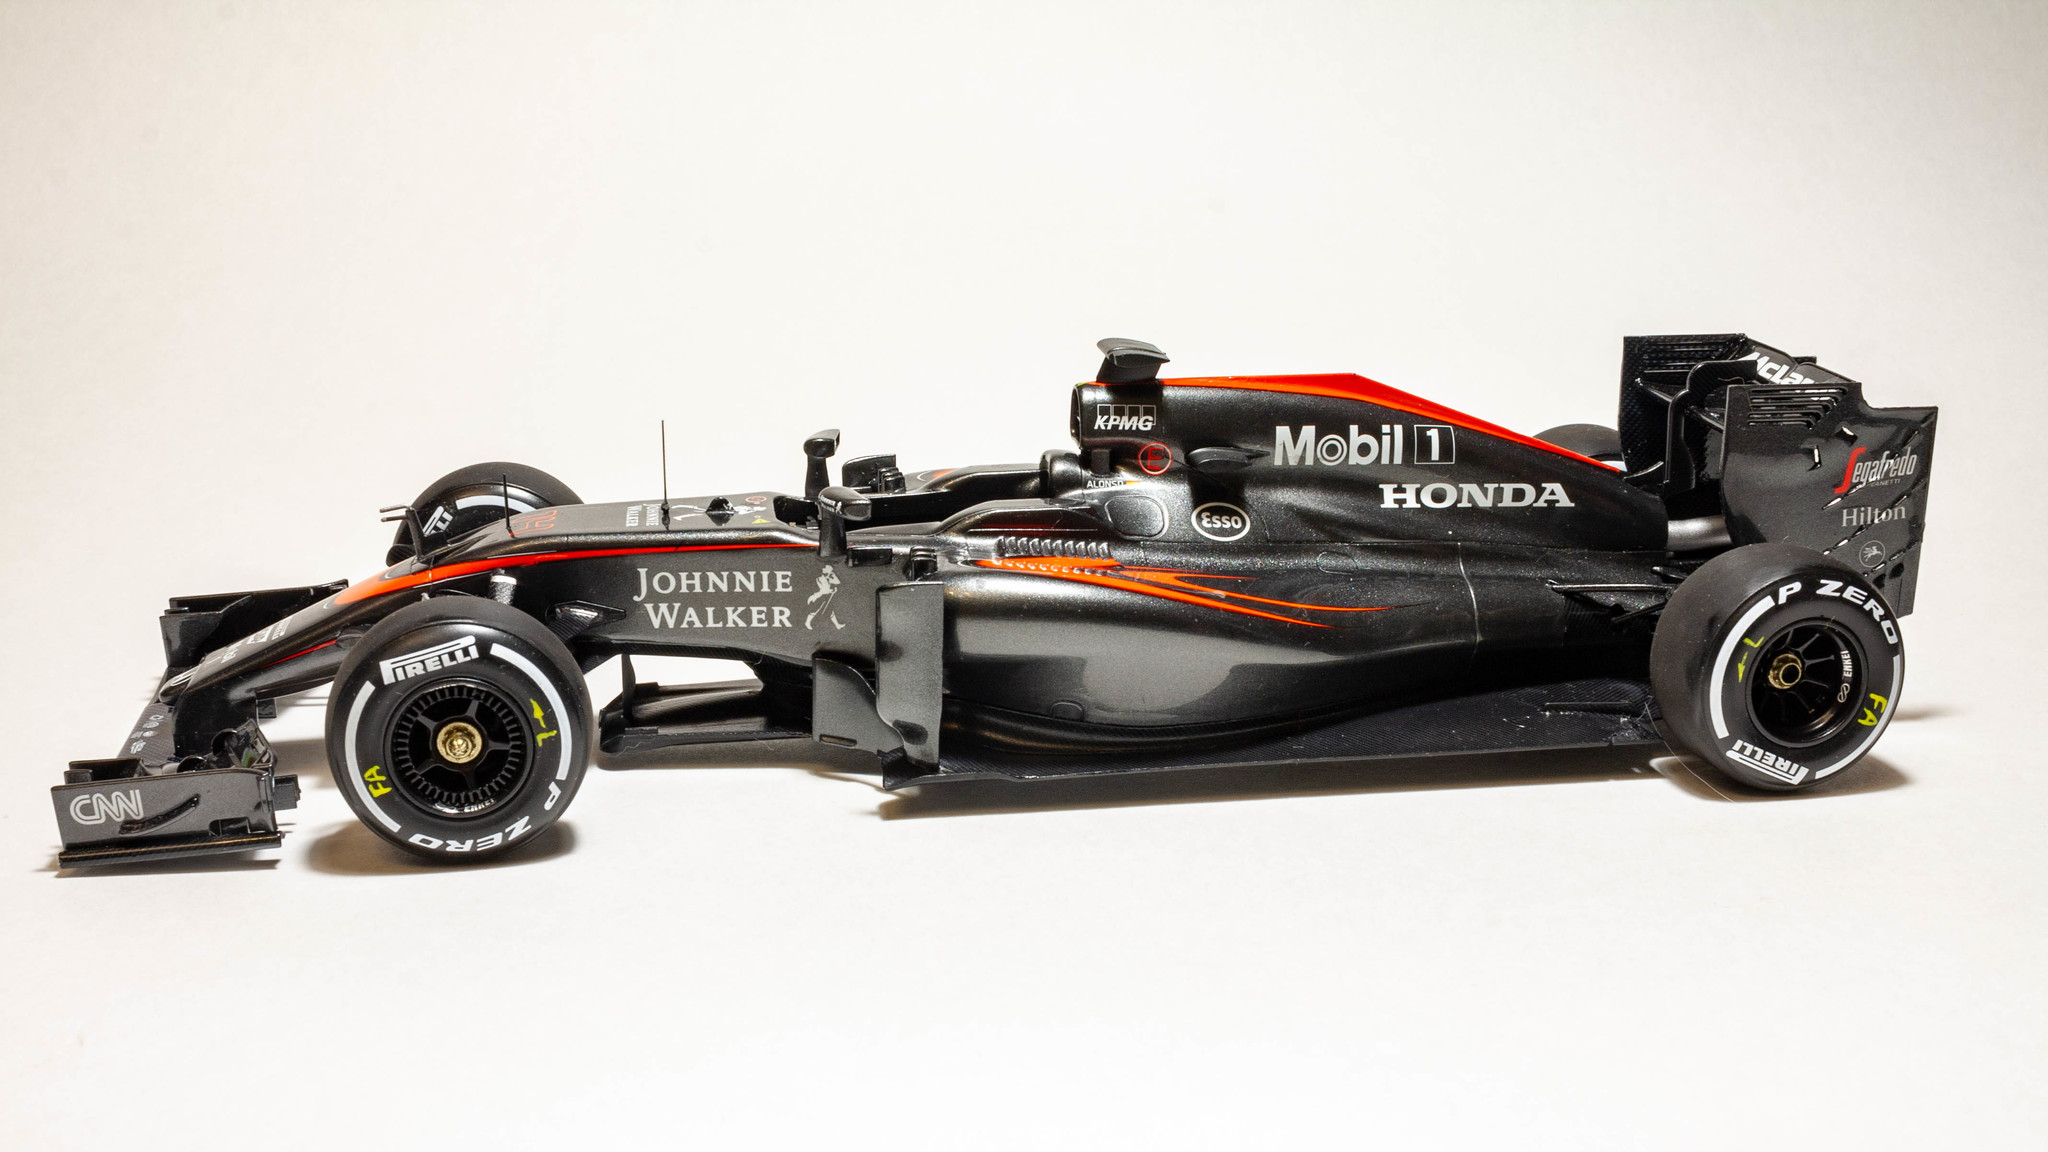 McLaren MP4-30 in 1:20 scale - My, Mclaren, Honda, Formula 1, Fernando Alonso, Mclaren Honda, Longpost